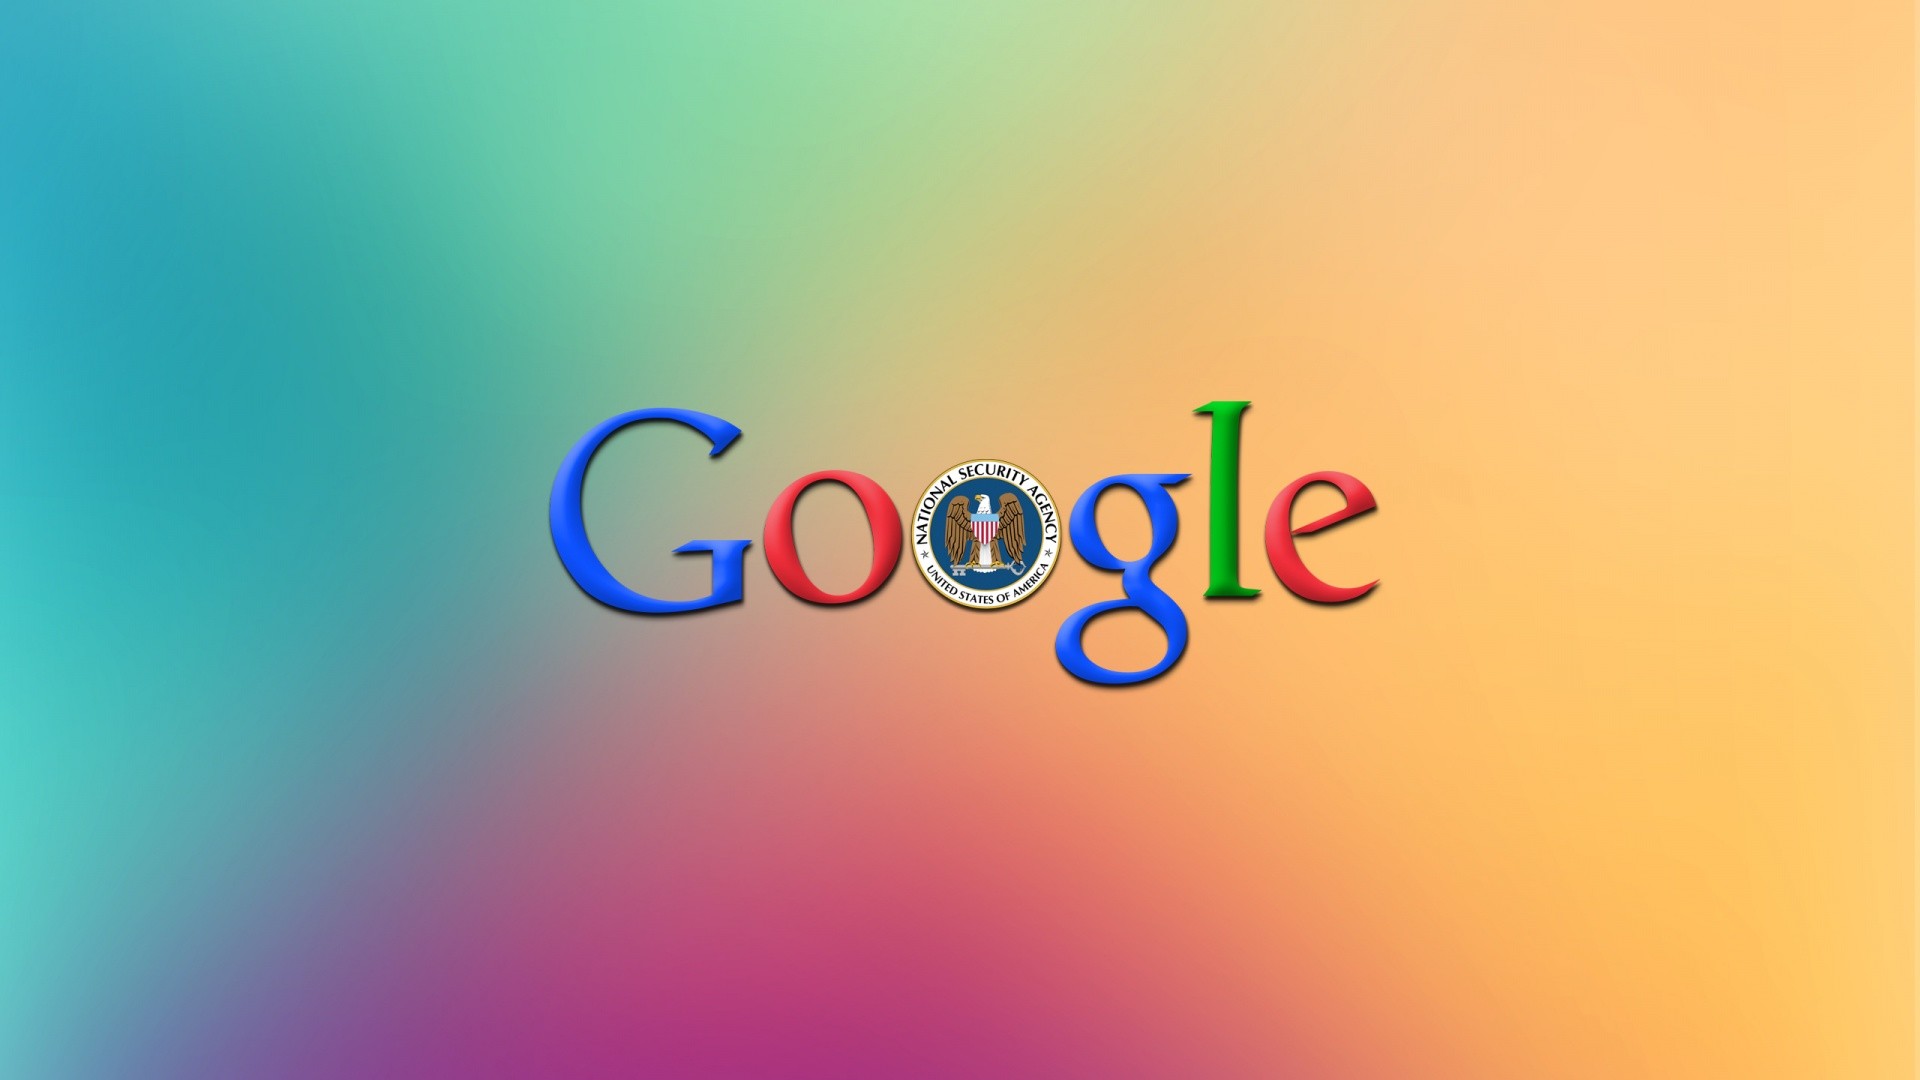 Google Background For Desktop Image